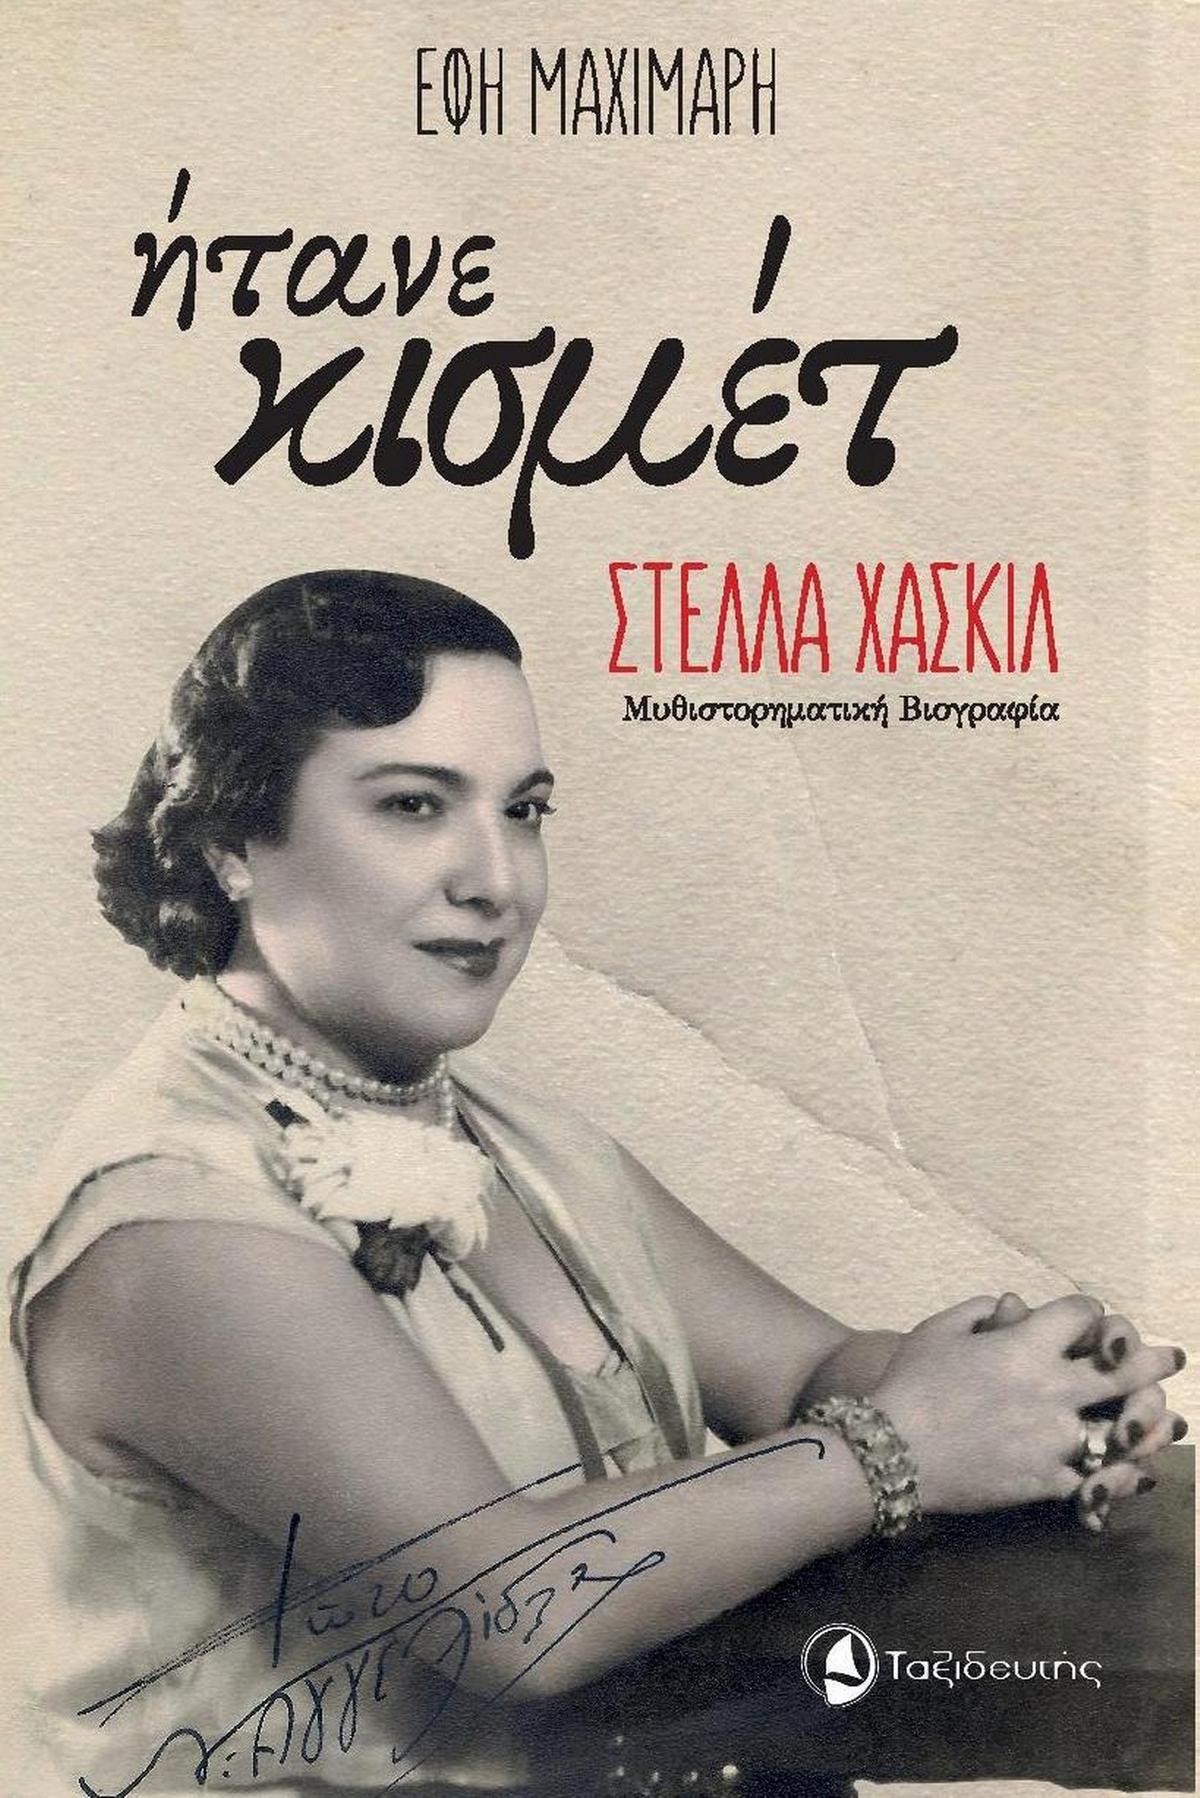 Ήτανε κισμέτ: Στέλλα Χασκίλ